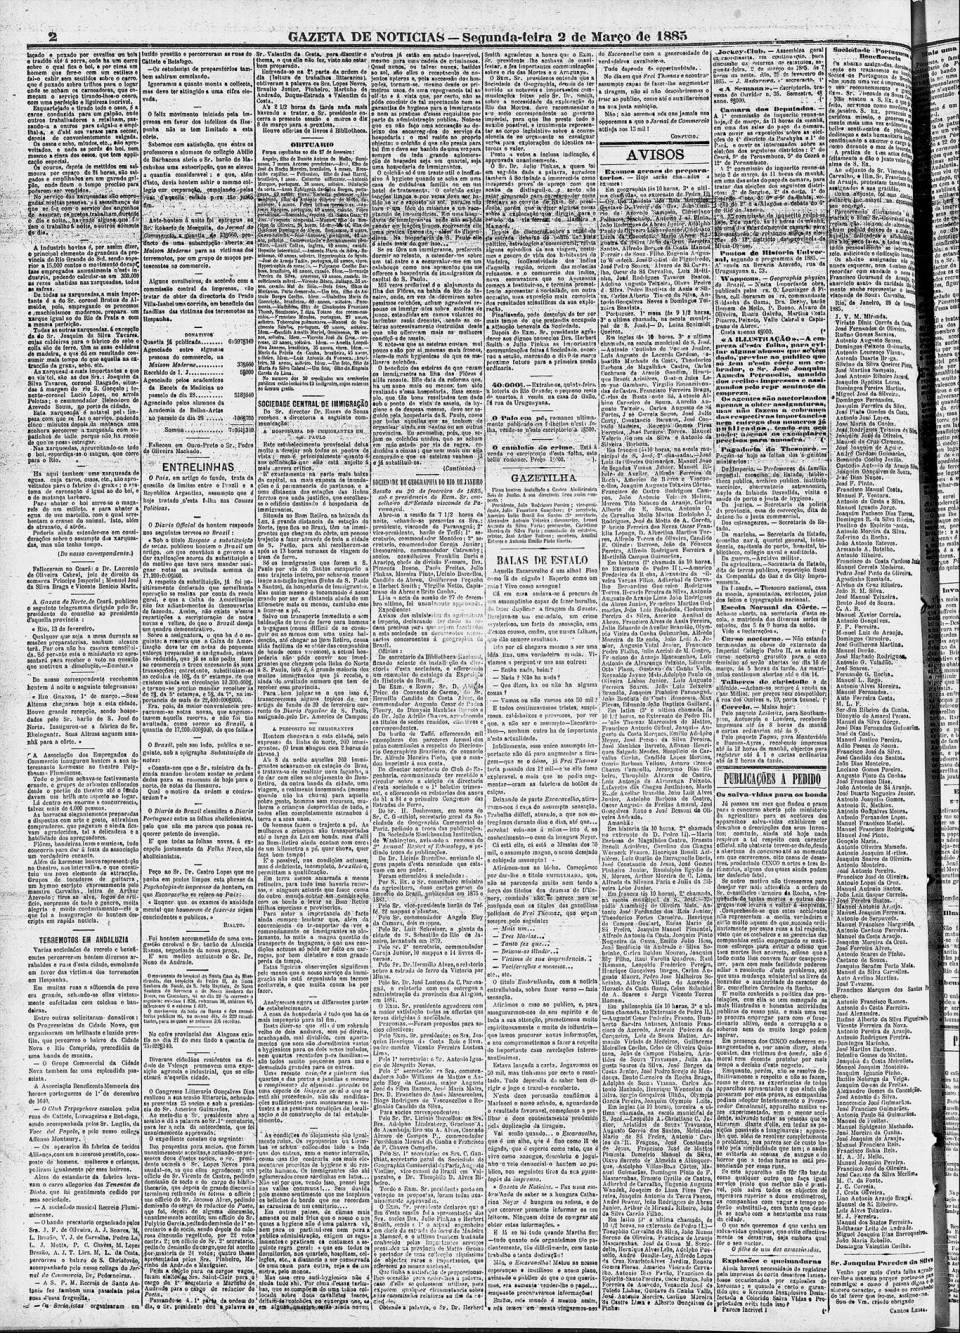 art-hospedaria-do-bom-retiro-precariedades-gazeta-de-noticias-2-march-1885-folha